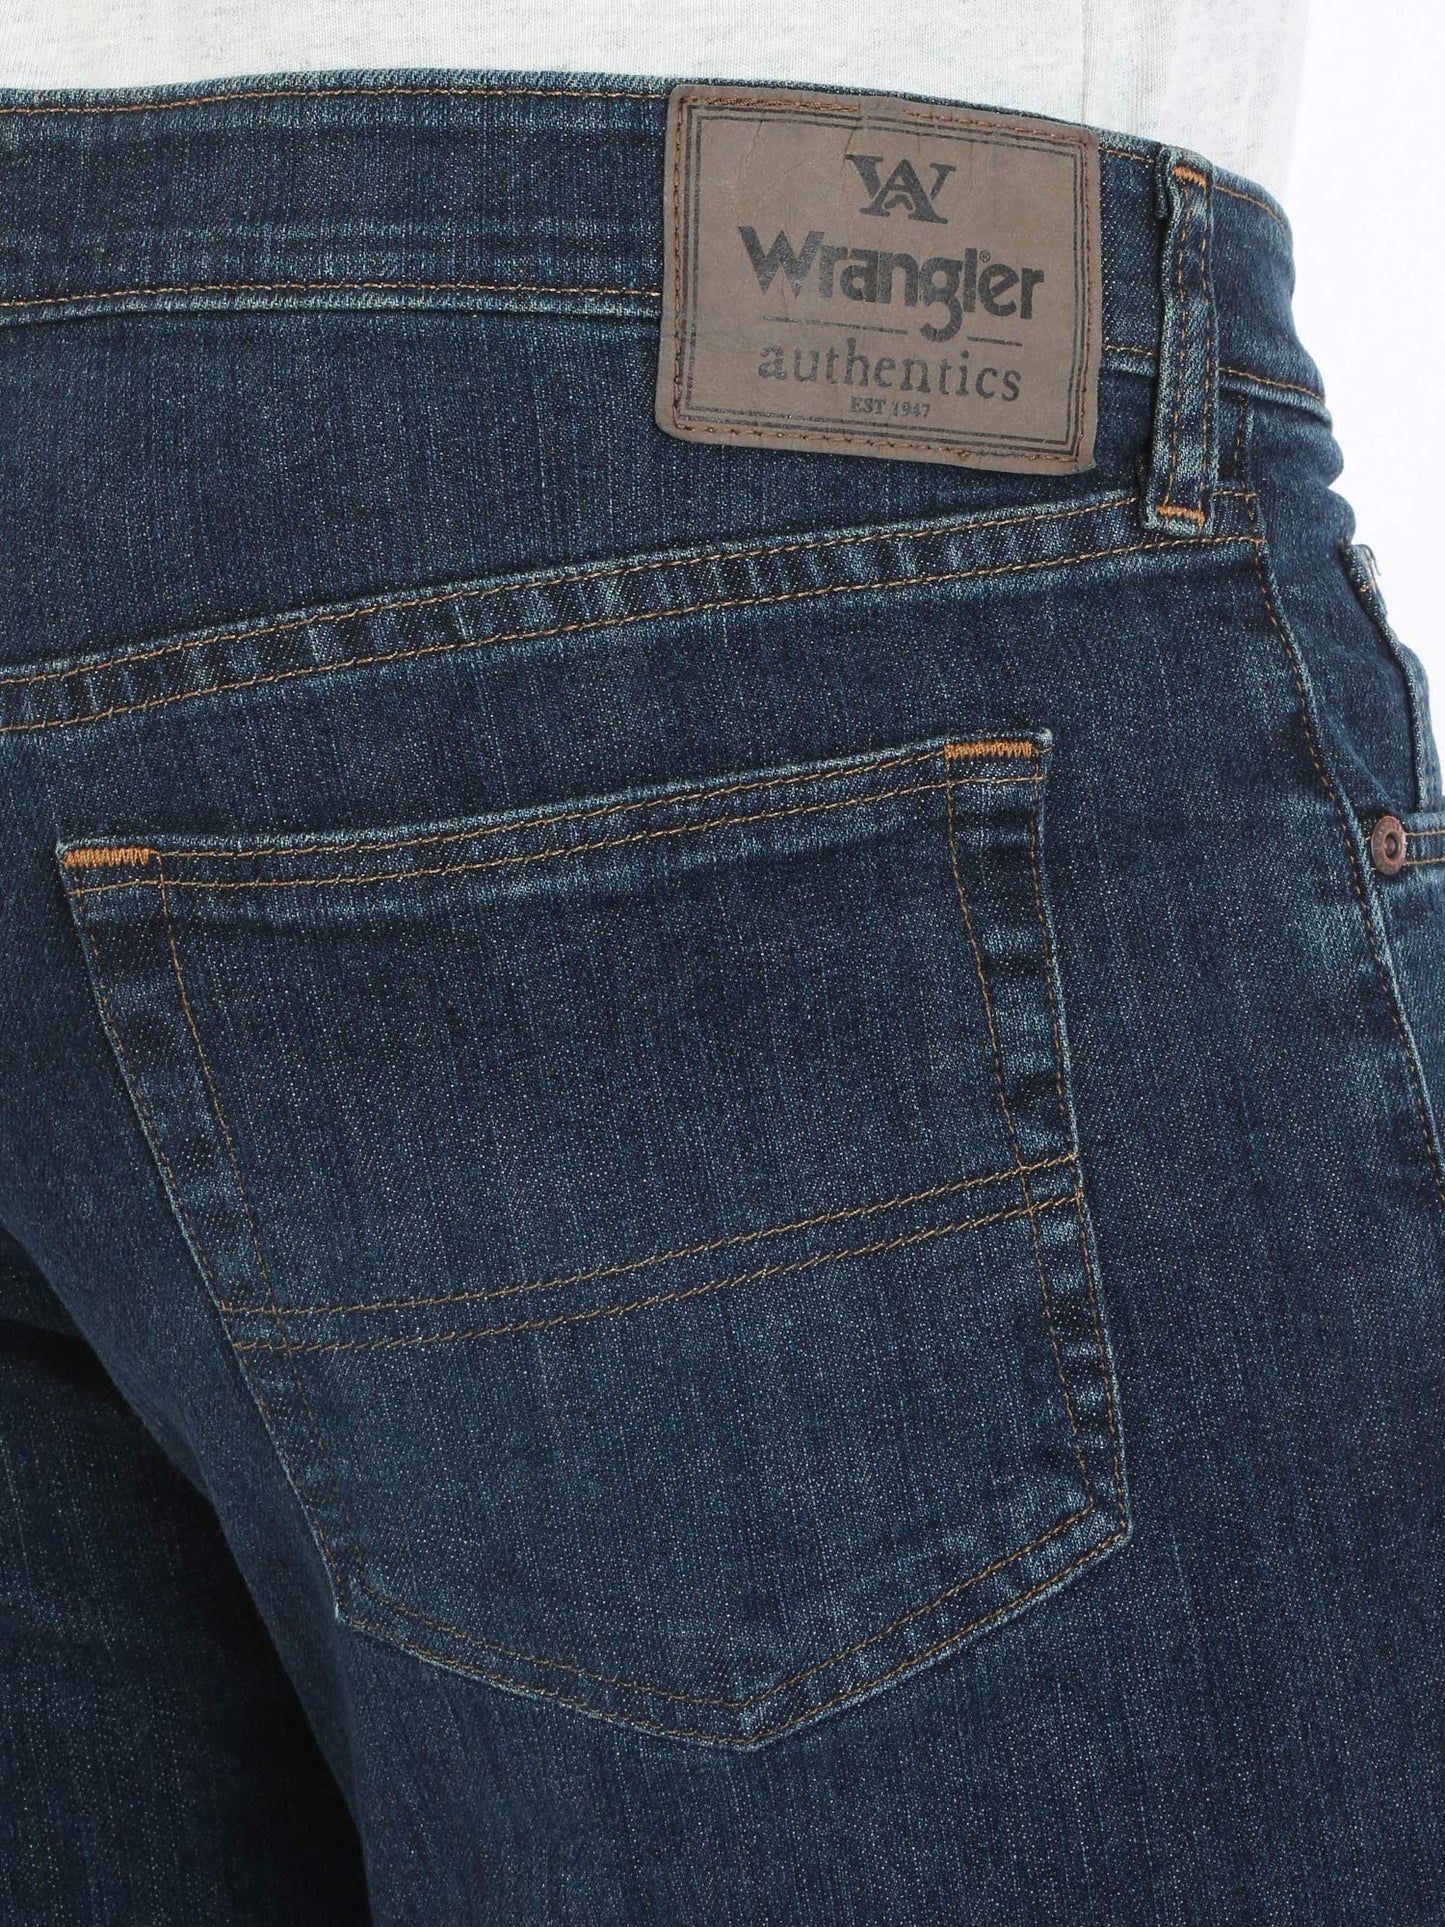 Wrangler Authentics Men's Comfort Flex Waist Relaxed Fit Jean, Carbon, 32W x 32L